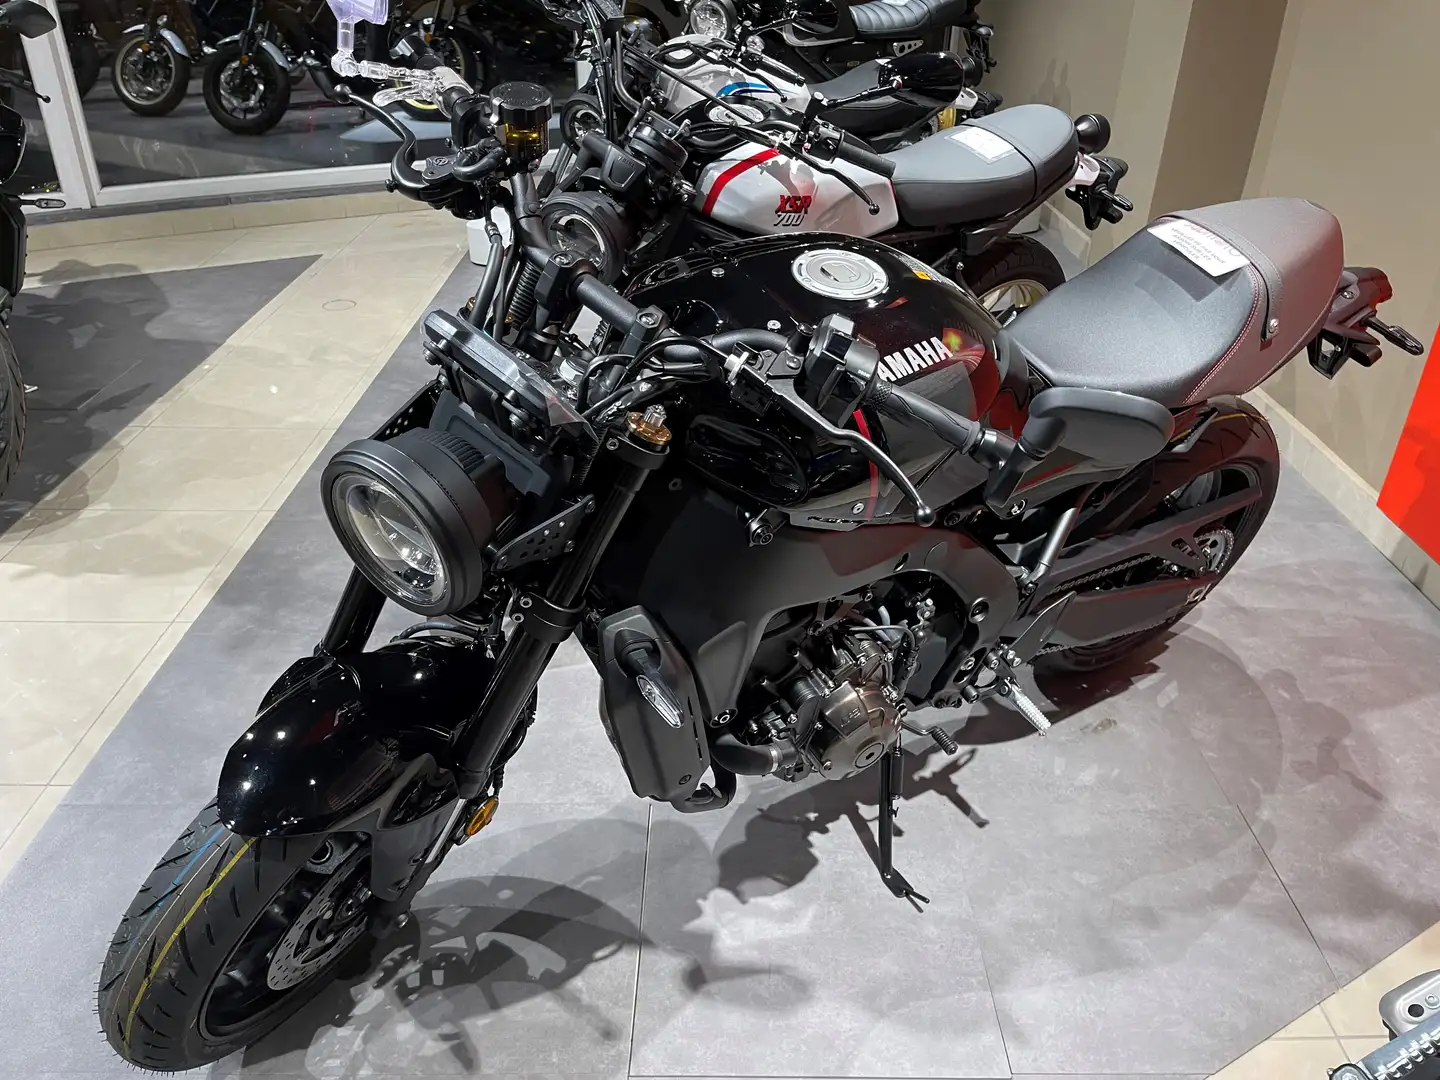 Yamaha XSR 900 Neuve - Disponible dans tous les coloris Black - 2